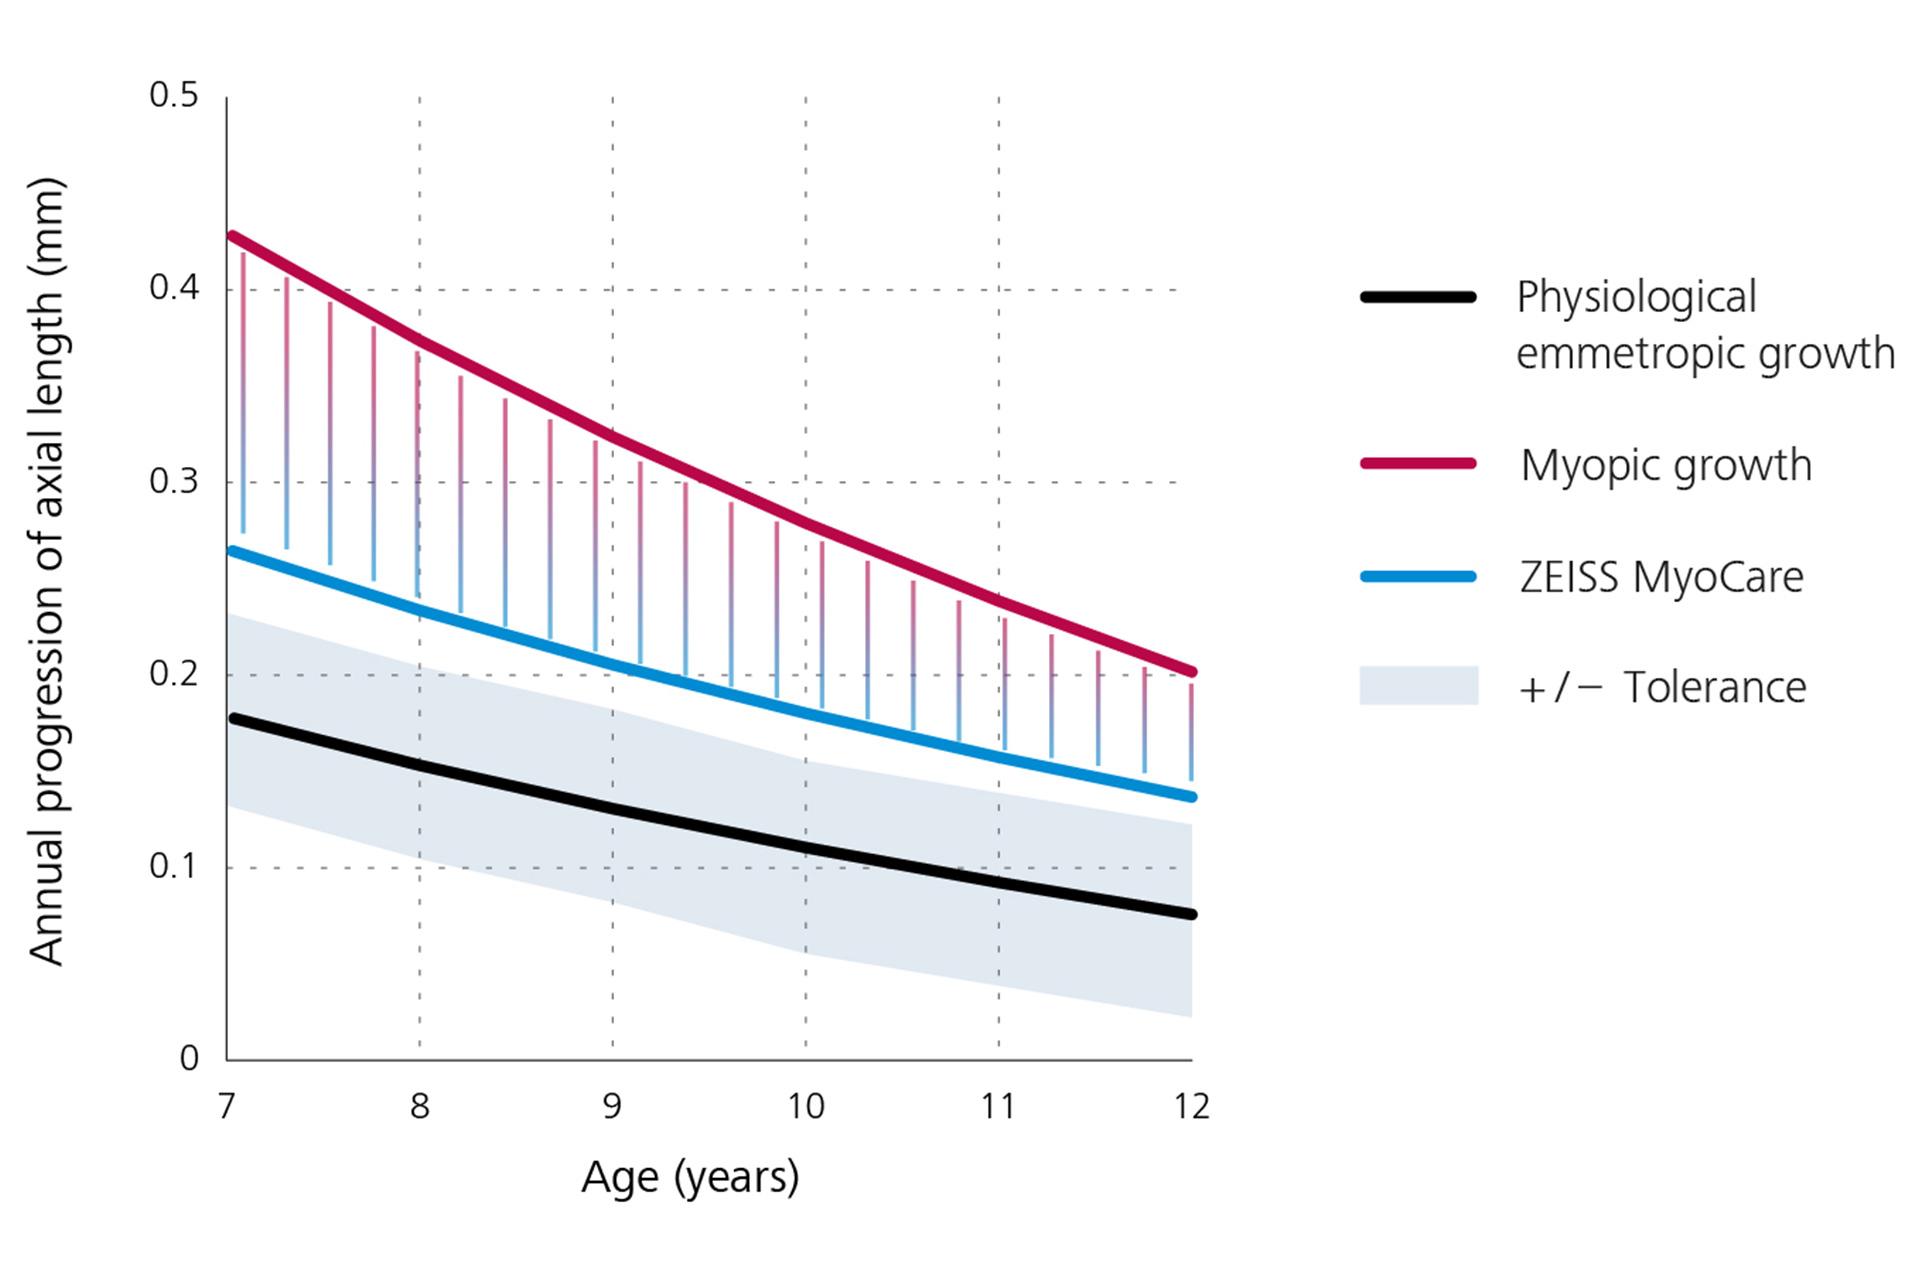 Wykres liniowy prezentujący roczne postępowanie długości osiowej, przedstawia fizjologiczny wzrost emetropii w kolorze czarnym na dole, wzrost krótkowzroczności w kolorze czerwonym na górze oraz wyniki dla soczewek ZEISS MyoCare w kolorze niebieskim na środku. Z wykresu wynika, że postępowanie krótkowzroczności jest poniżej krzywej wzrostu krótkowzroczności, jeśli pacjent nosi soczewki ZEISS MyoCare.  